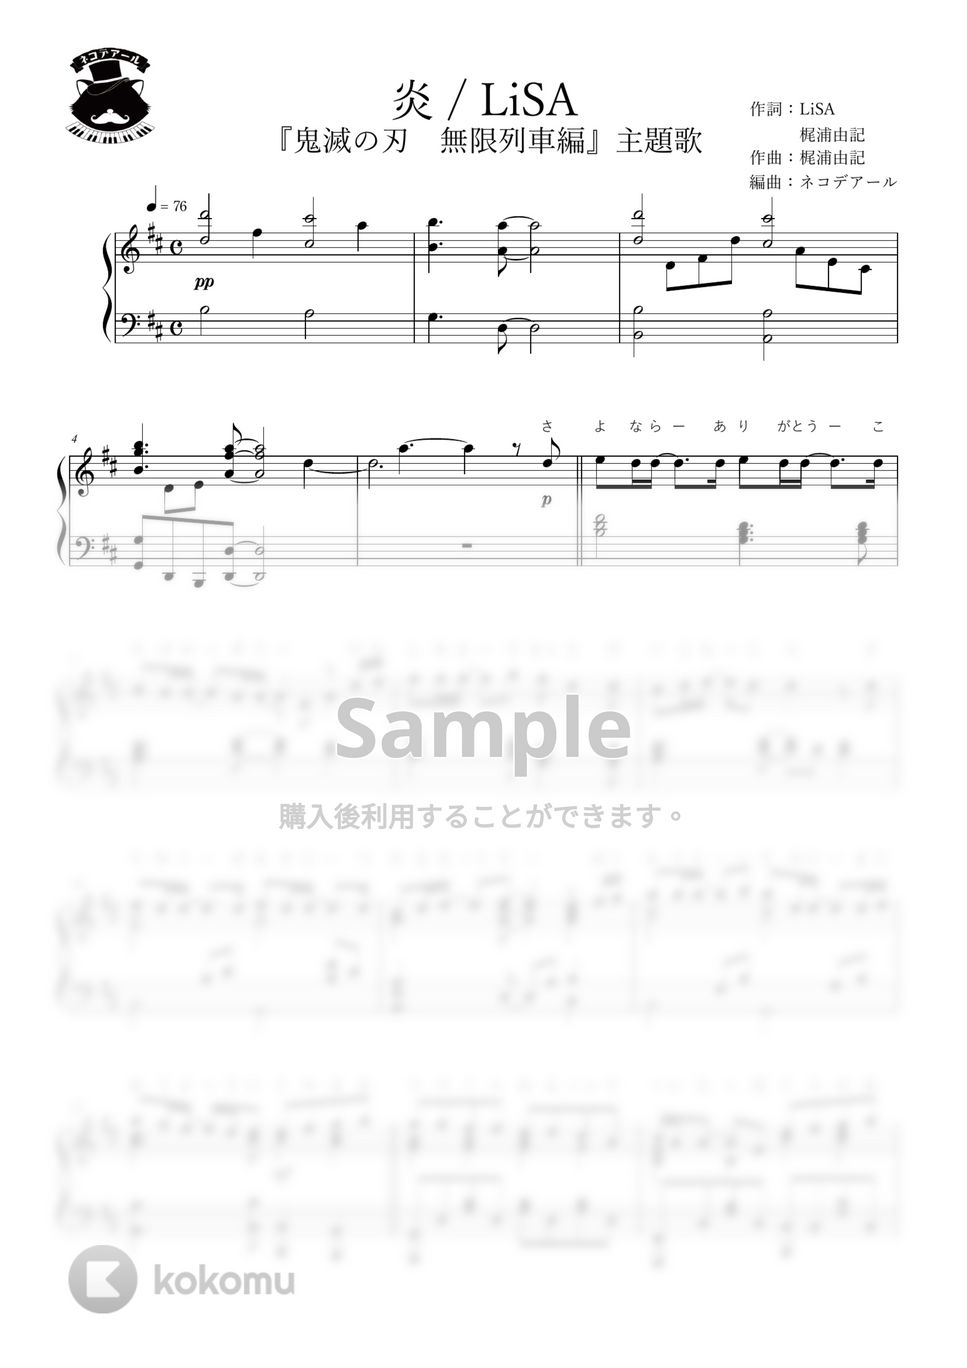 鬼滅の刃 無限列車編 - 炎 (上級ピアノソロ) by ネコデアール